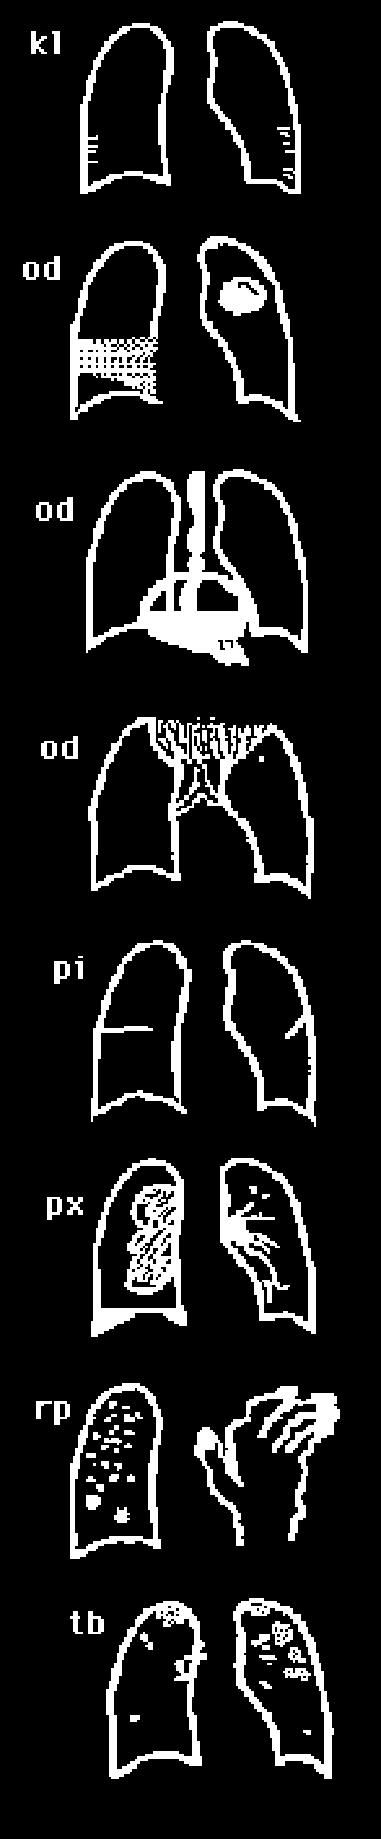 326 지하철역사근로자의석면노출에대한건강영향평가 부록 325 ef - effusion em - definite emphysema es - egg shell calcification fr - fractured rib(s) hi - enlargement of hilar or mediastinal lymph nodes ho - honeycomb lung id